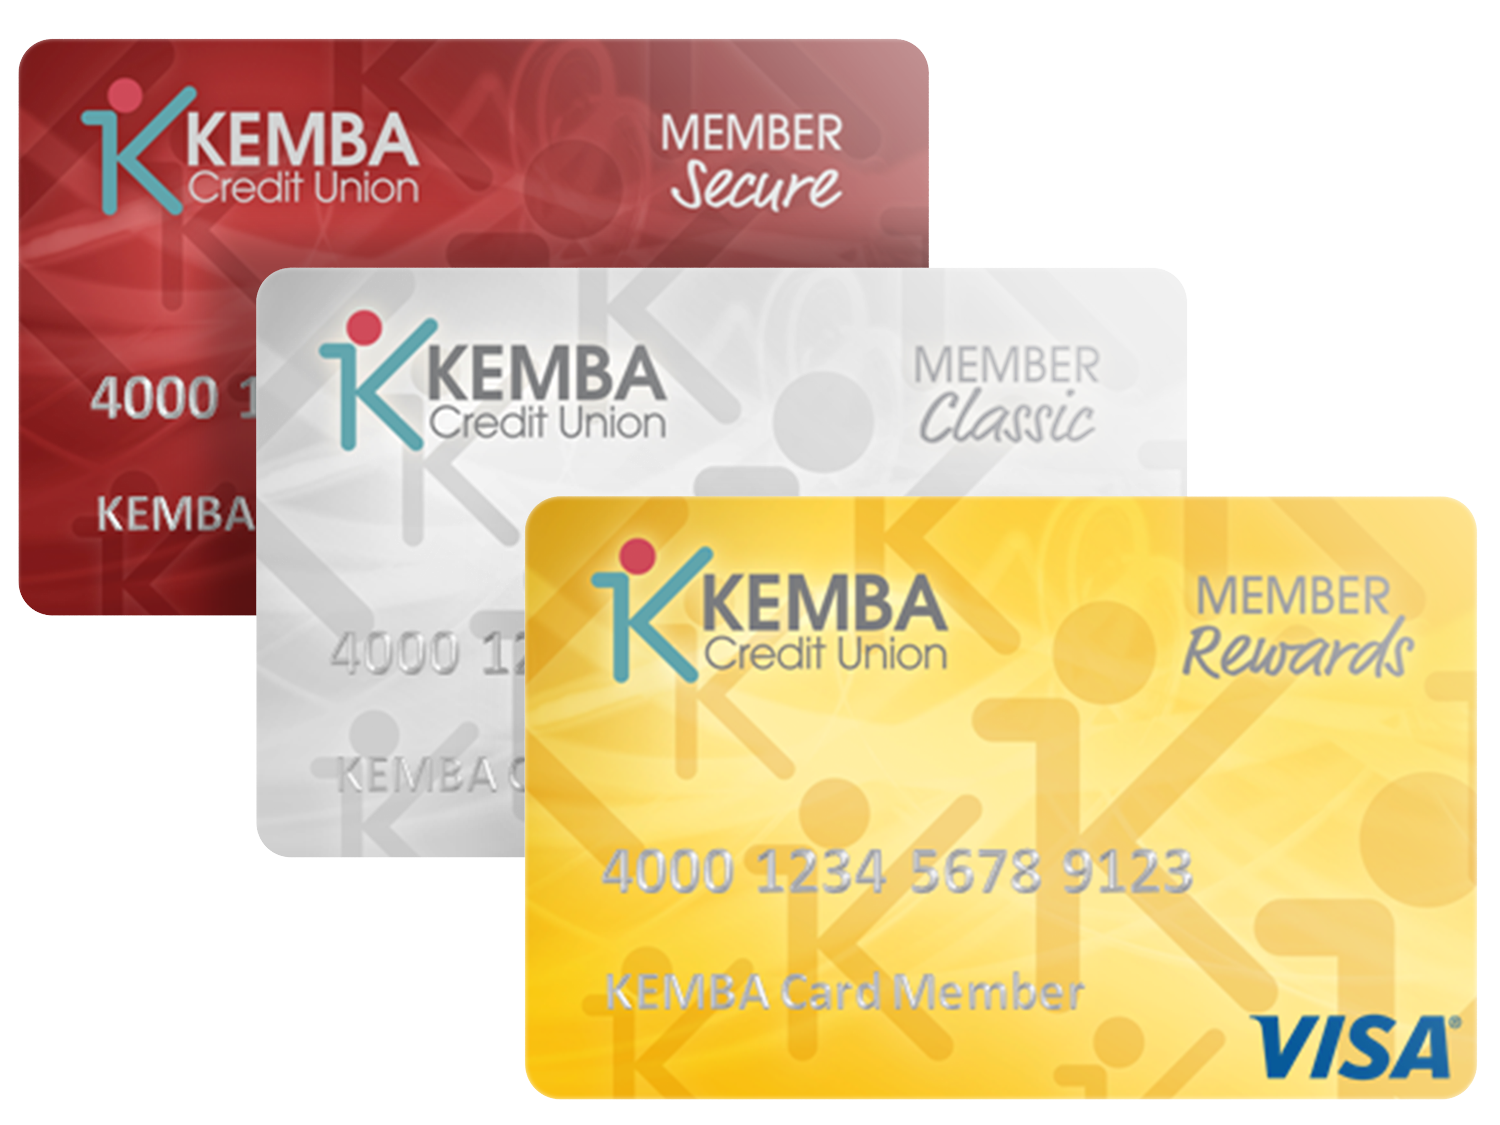 KEMBA Credit